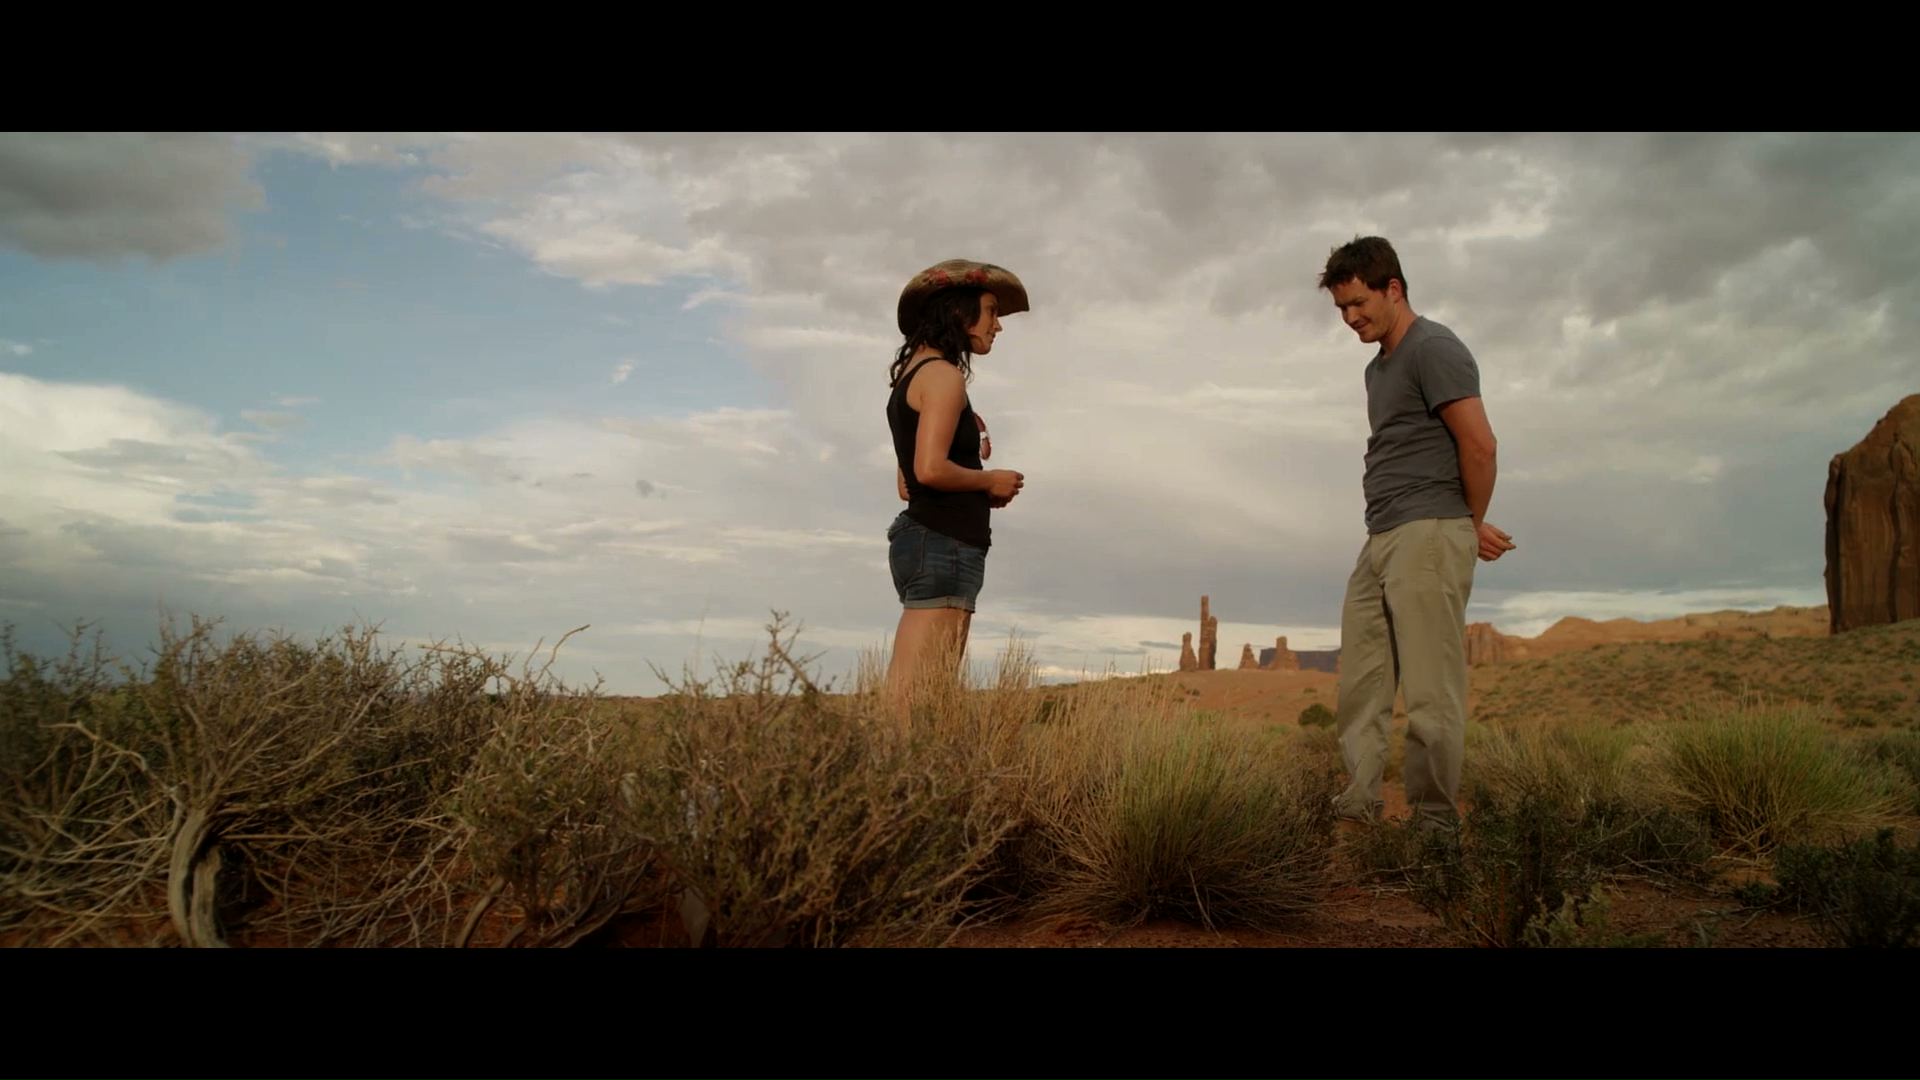 Ryan Caraway and Kelsey Siepser in 'West of Her' (2016).